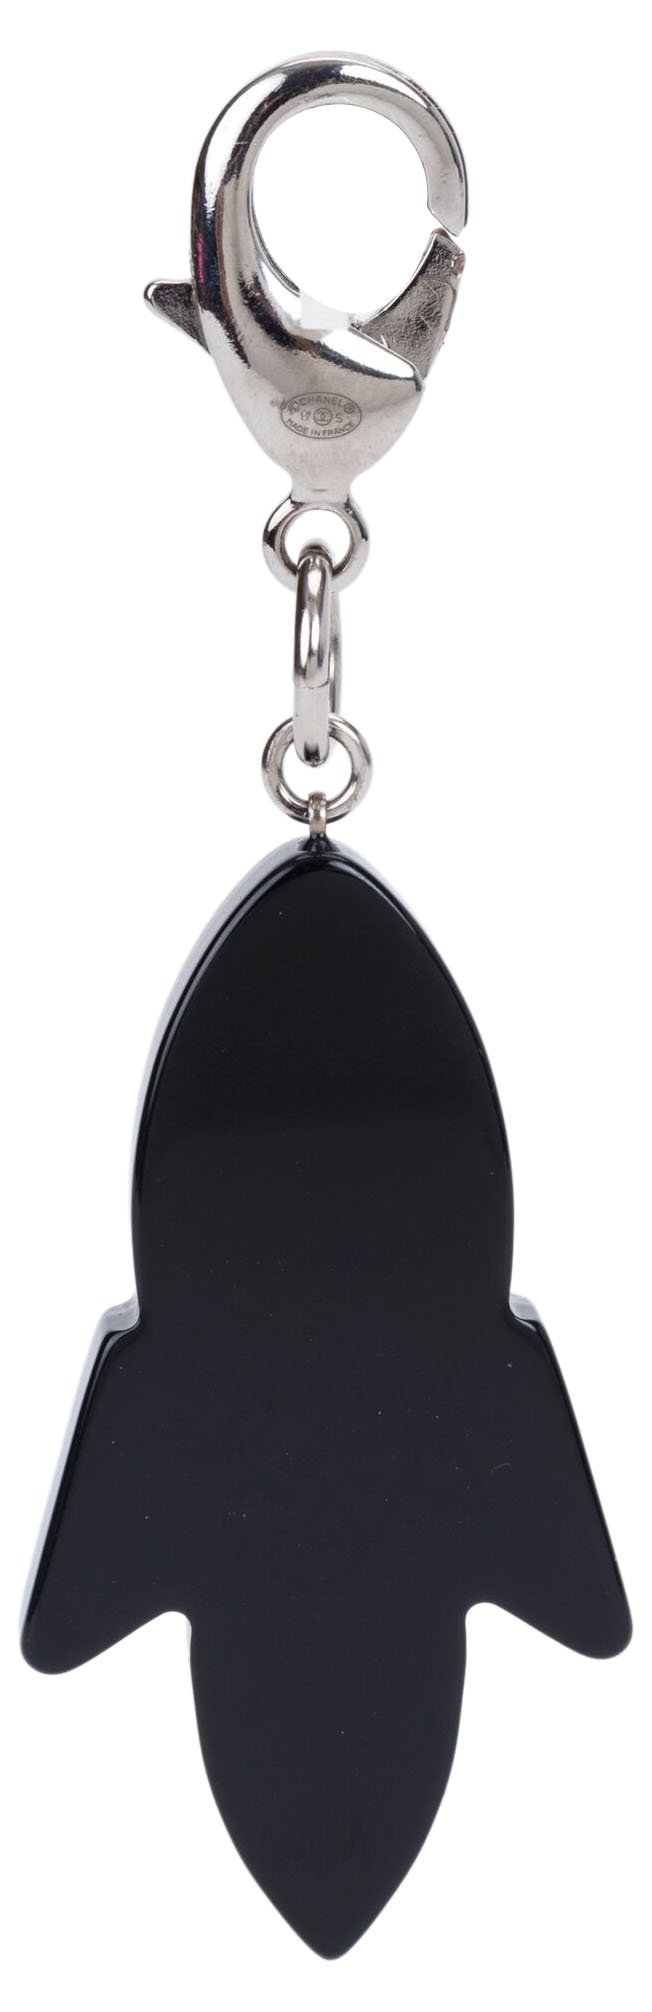 Chanel Lucite Rocket Keychain - Vintage Lux